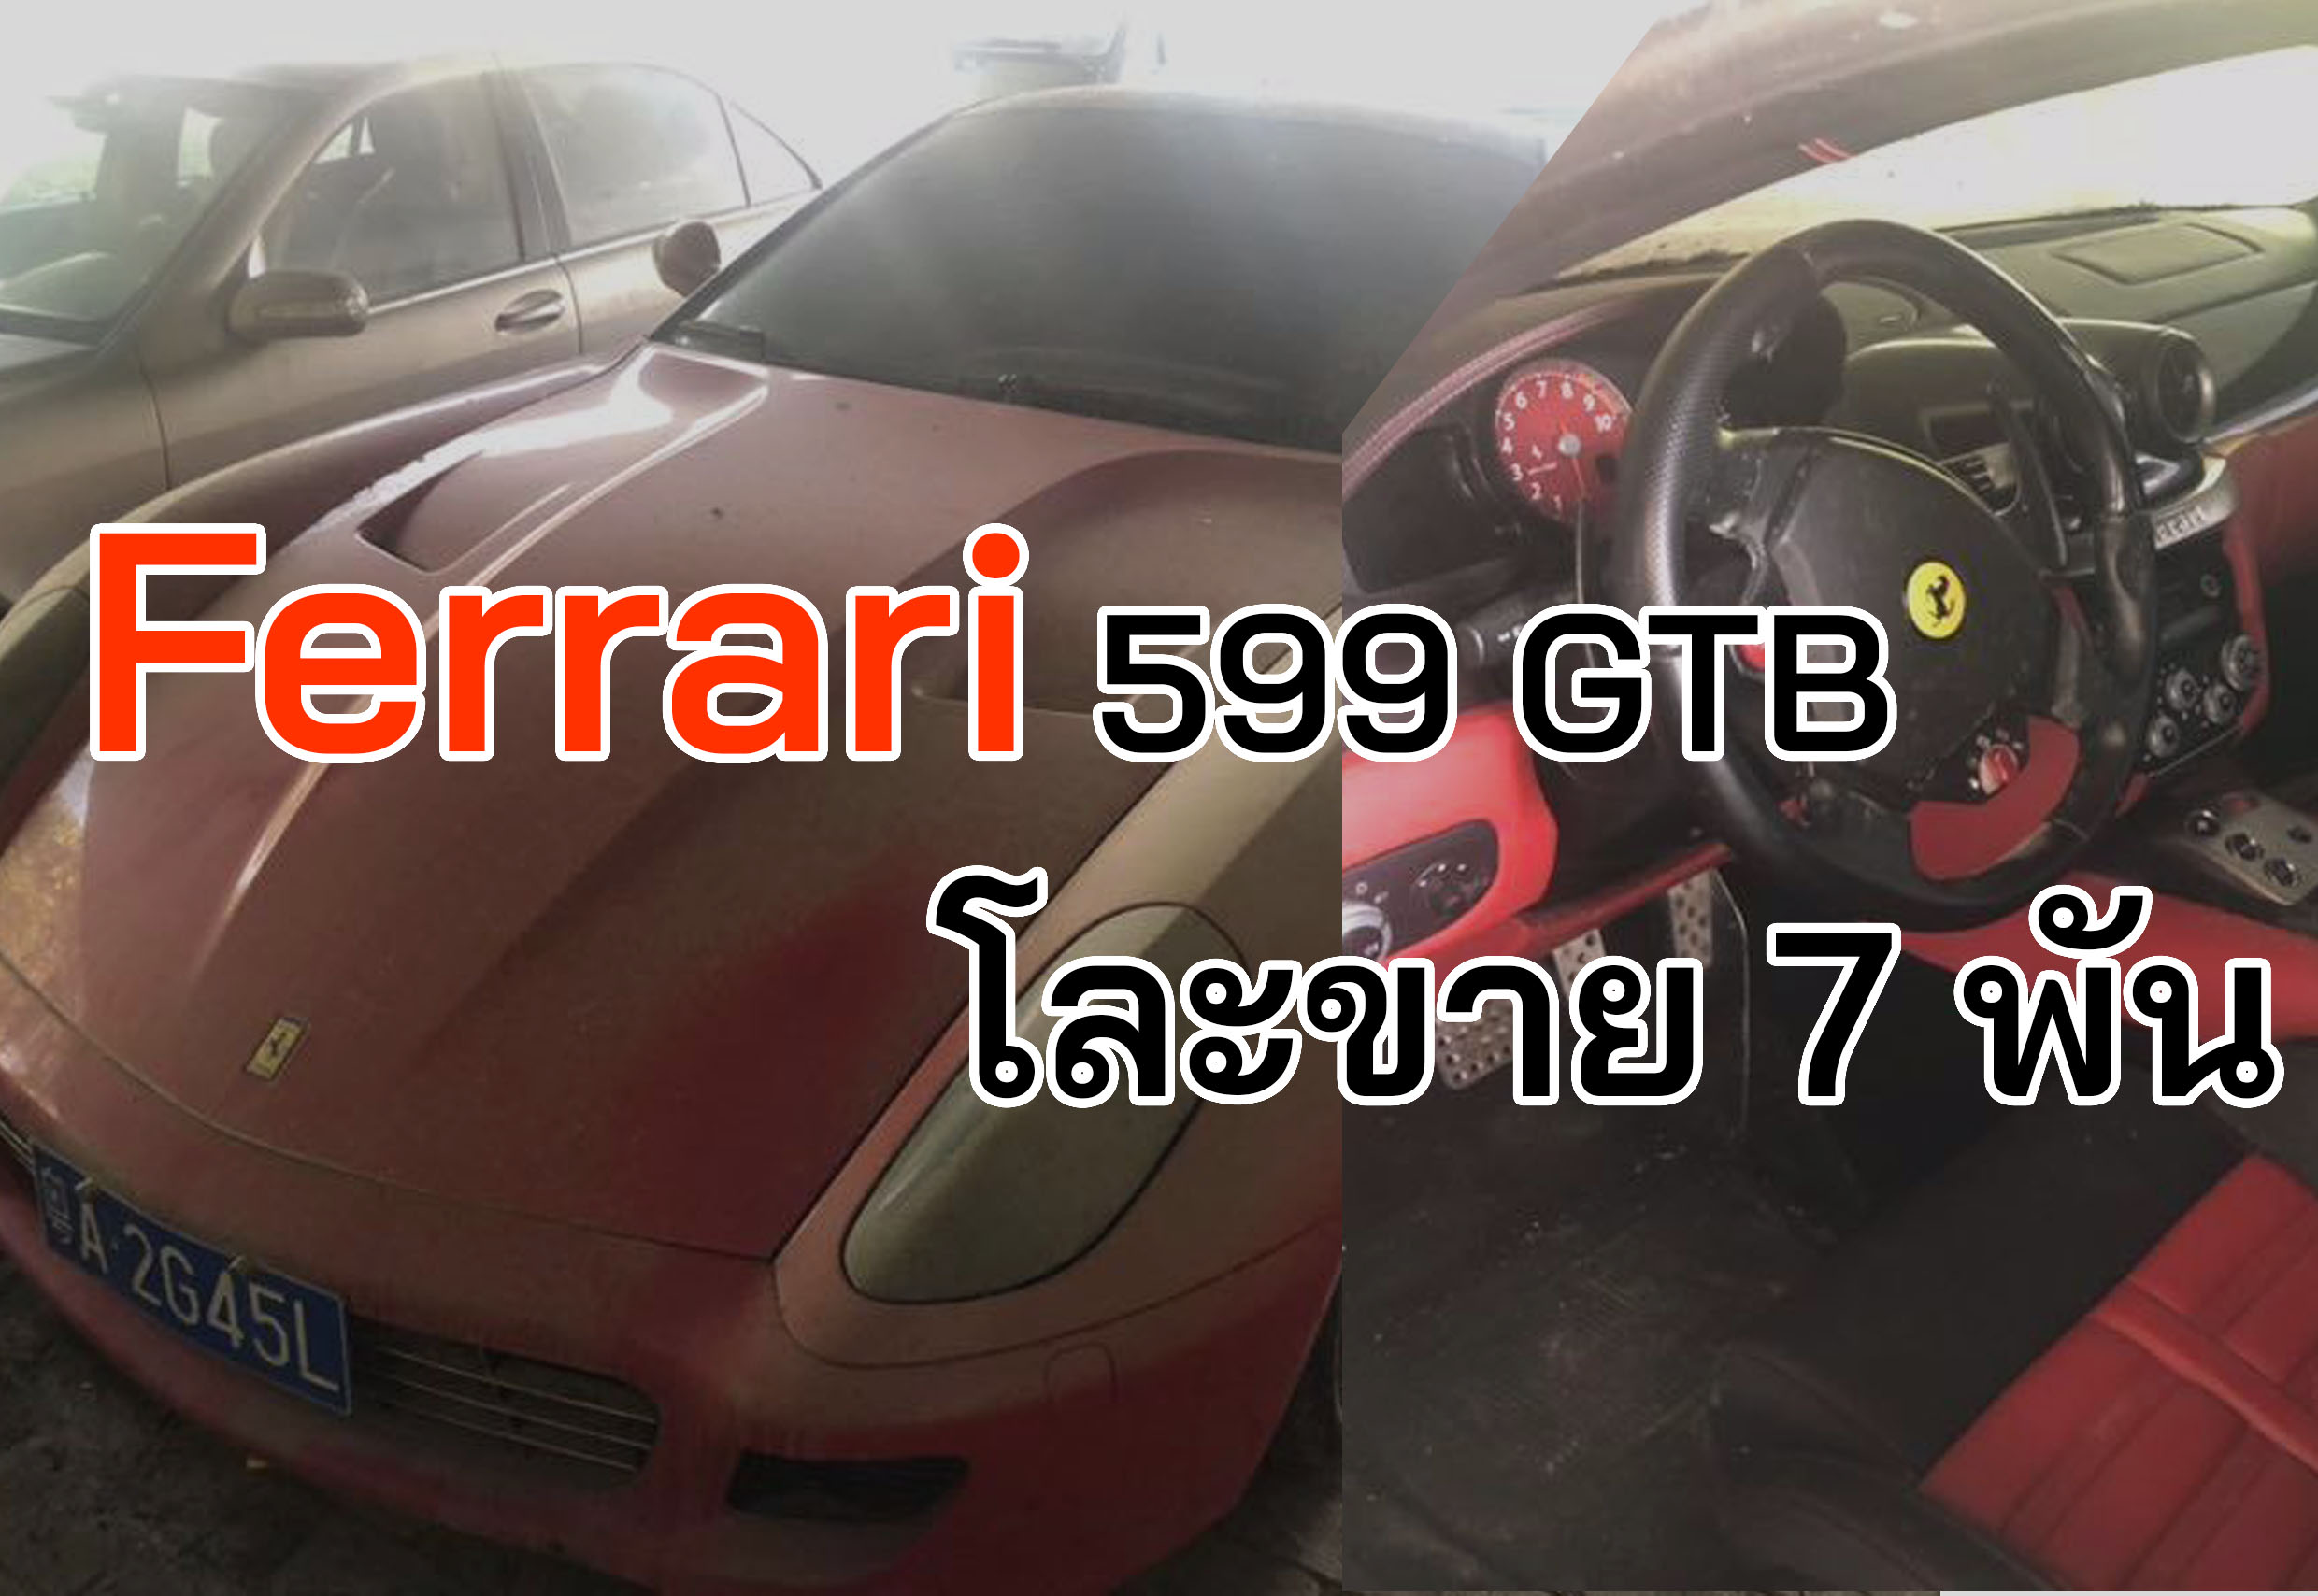 Ferrari 599 GTB รถเก่าขายถูกมาก เพียง 7,000 บาทในจีน